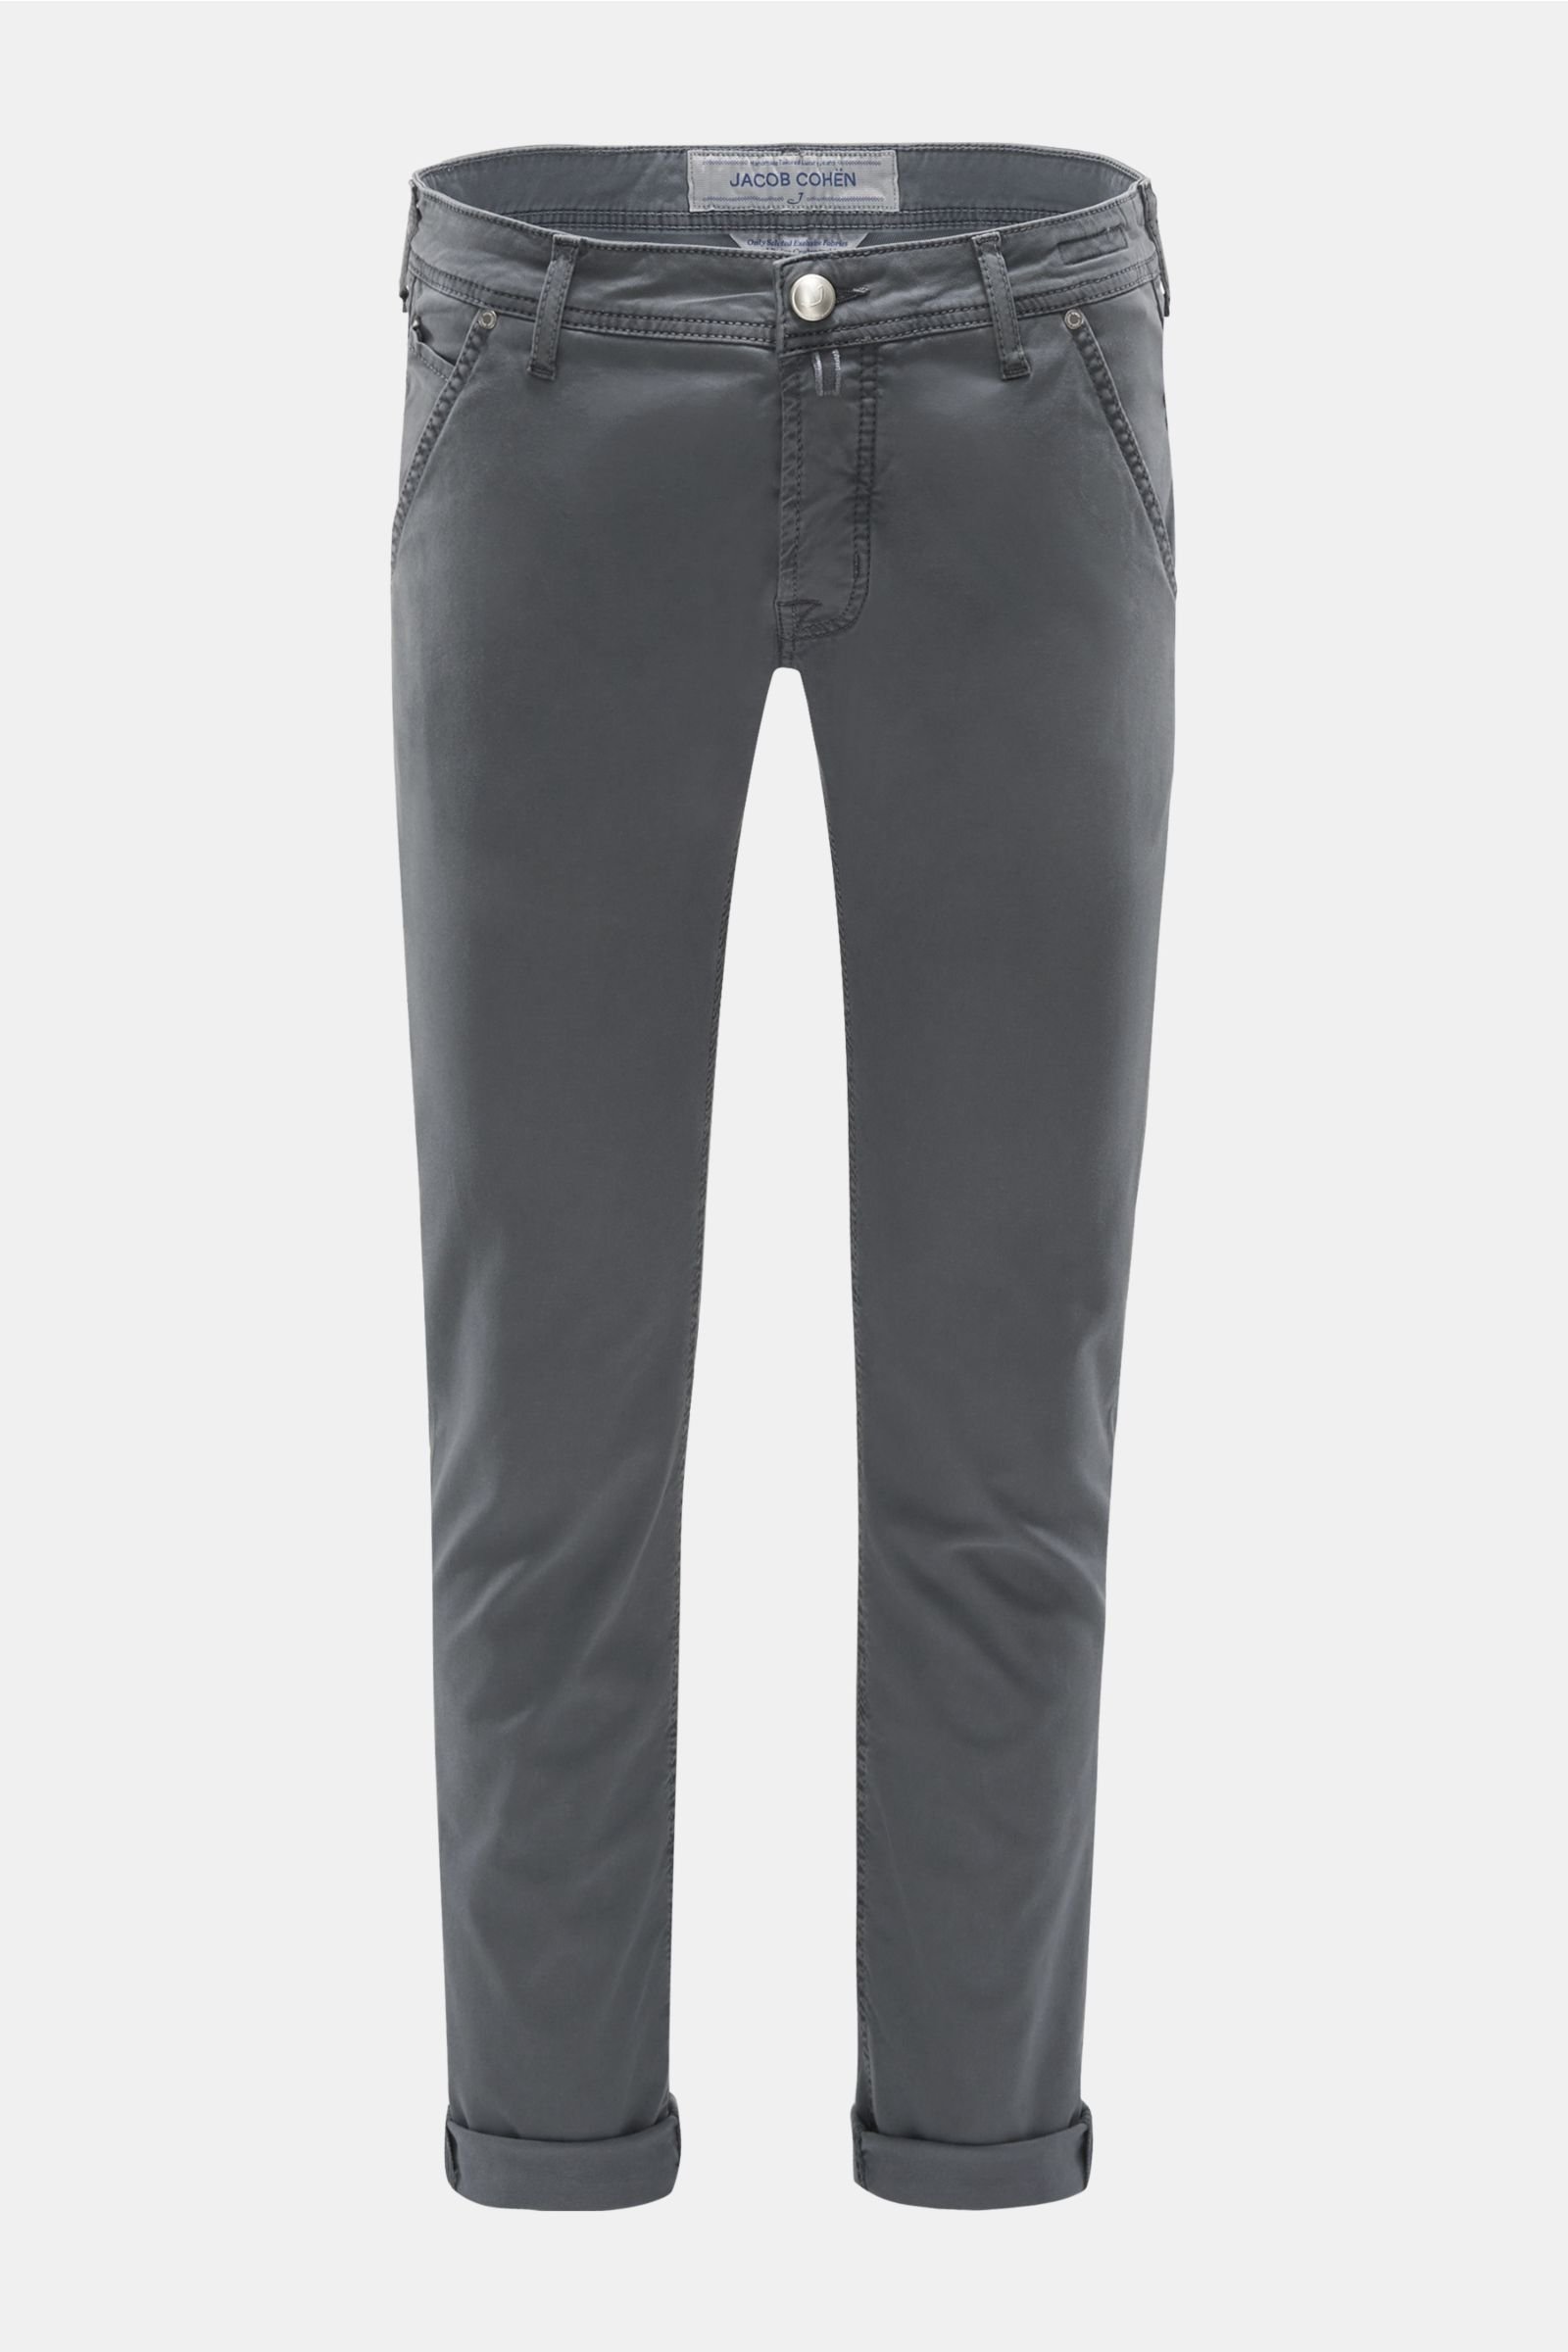 Trousers 'J613 Comfort Slim Fit' dark grey